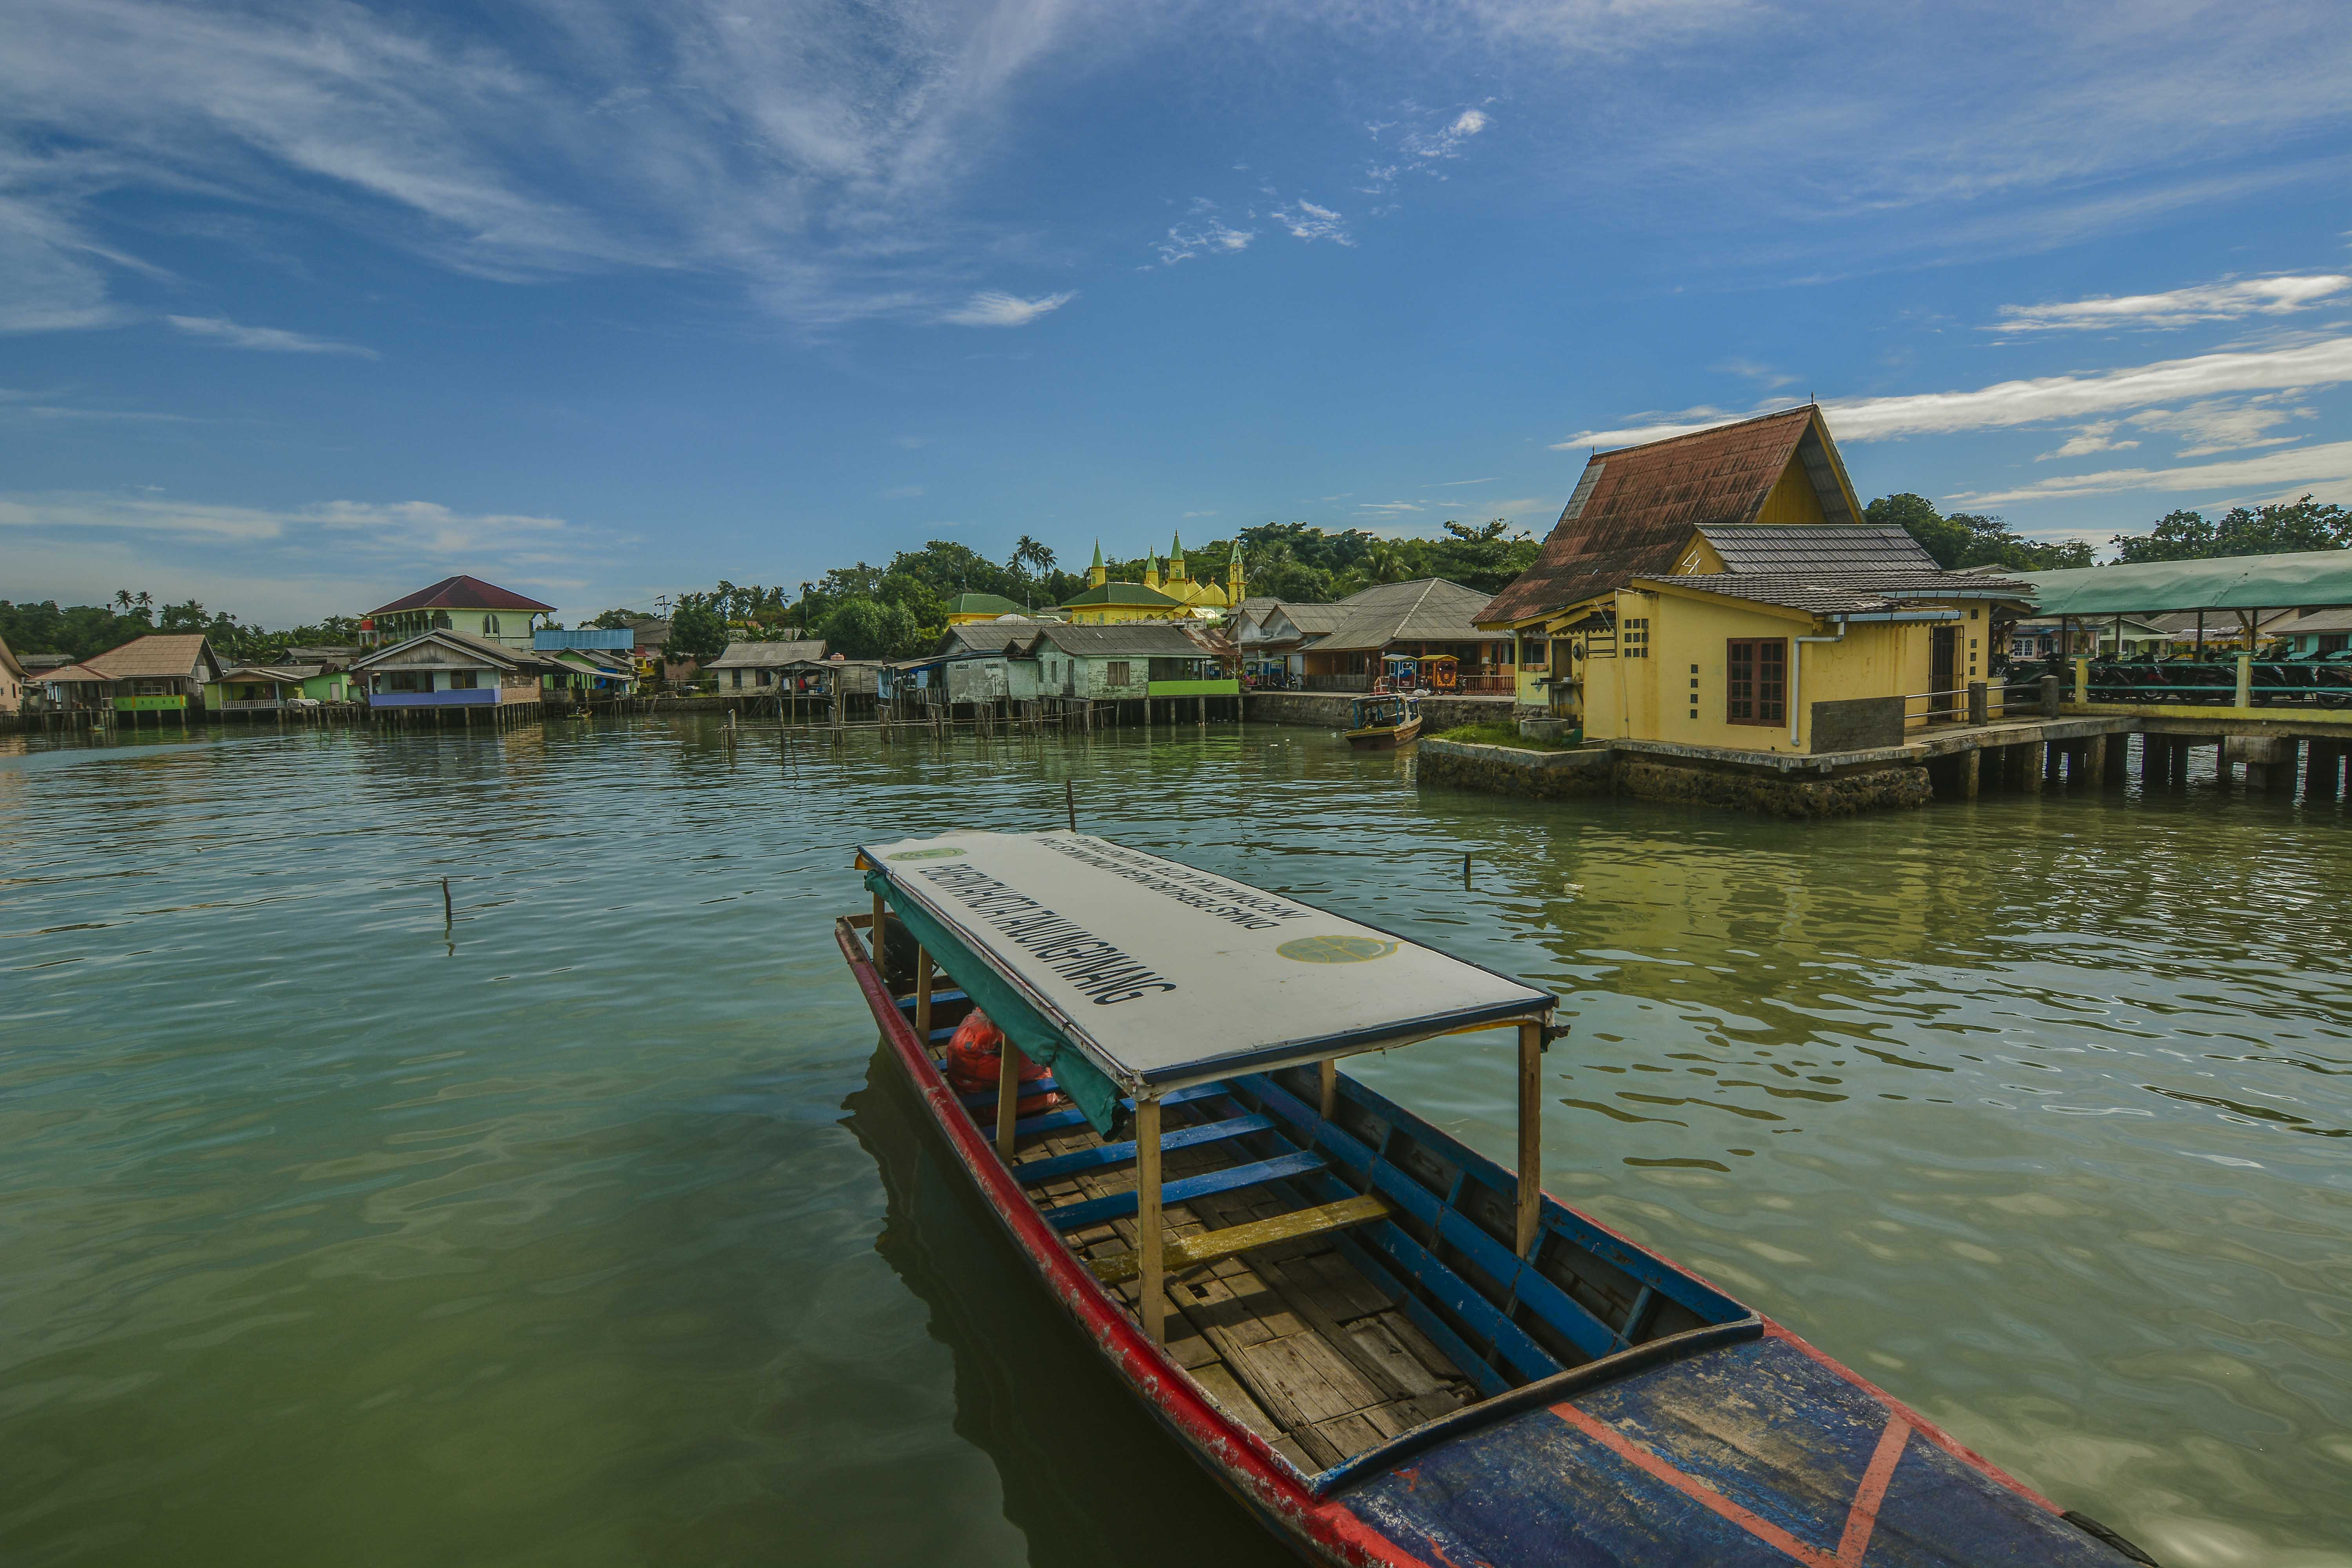 Lingkungan rumah-rumah warga di Pulau Penyengat (dok.pribadi)